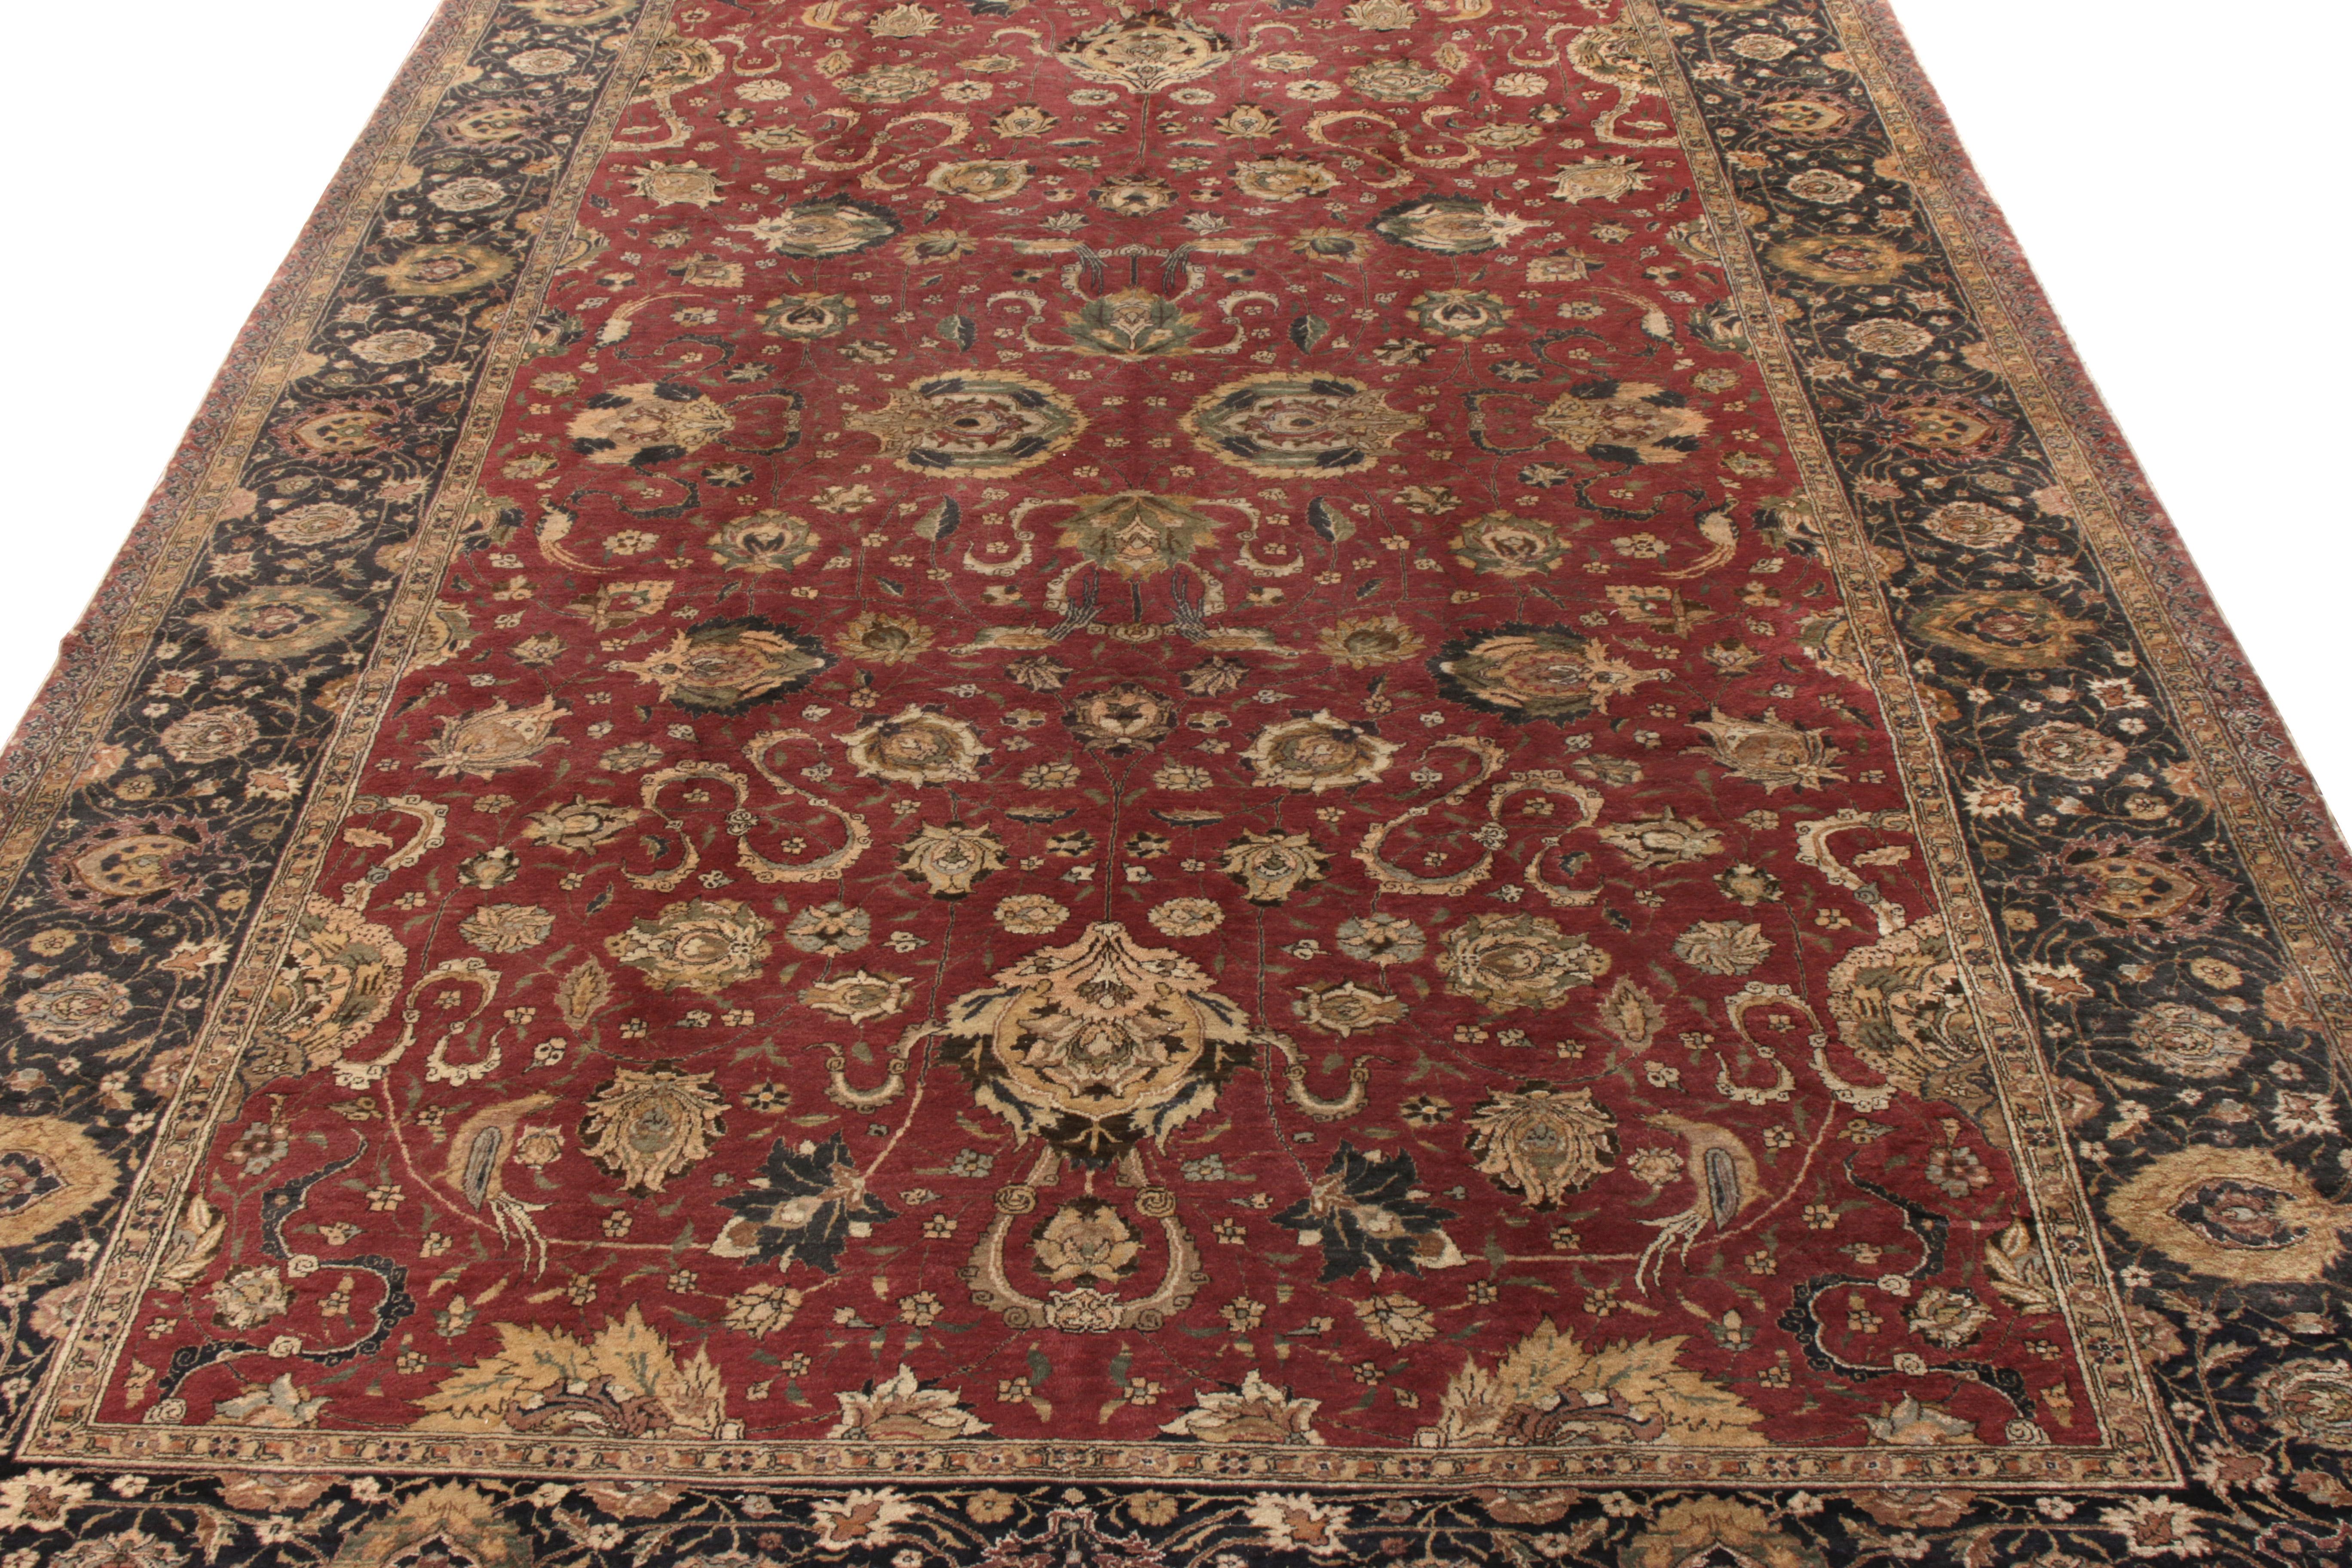 Un tapis antique 8x12 de style Hereke datant des années 1920-1930, présentant un mélange de sensibilité texturale impeccable et d'esthétique traditionnelle. Inspiré des pièces d'audience de la Perse et de la Turquie ottomane, le tapis présente un